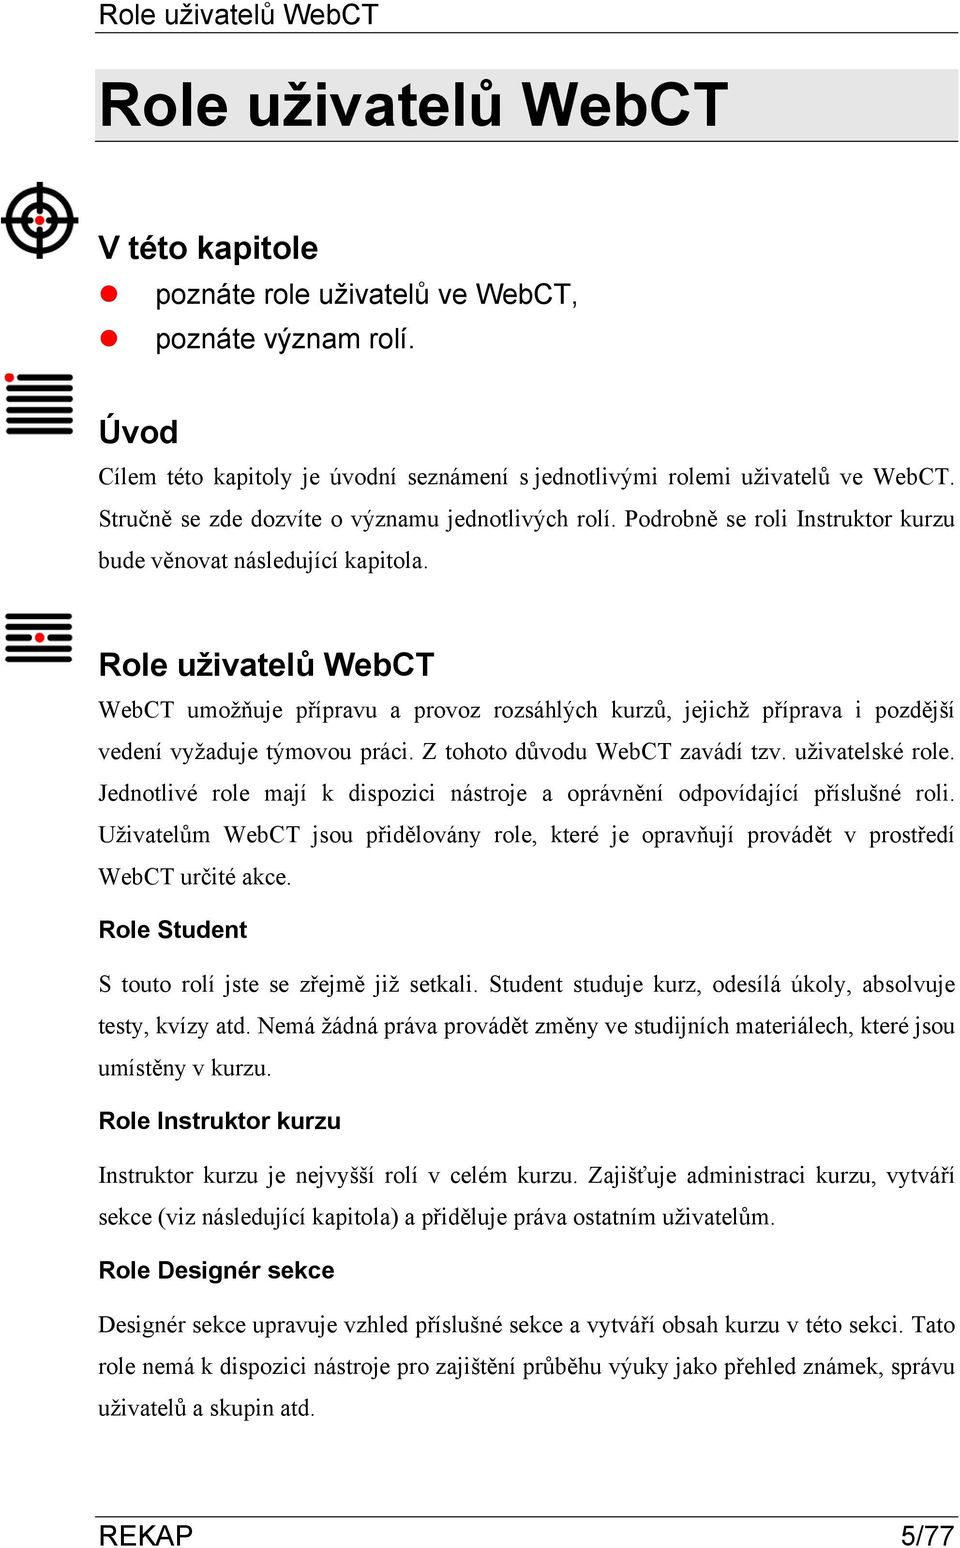 Role uživatelů WebCT WebCT umožňuje přípravu a provoz rozsáhlých kurzů, jejichž příprava i pozdější vedení vyžaduje týmovou práci. Z tohoto důvodu WebCT zavádí tzv. uživatelské role.